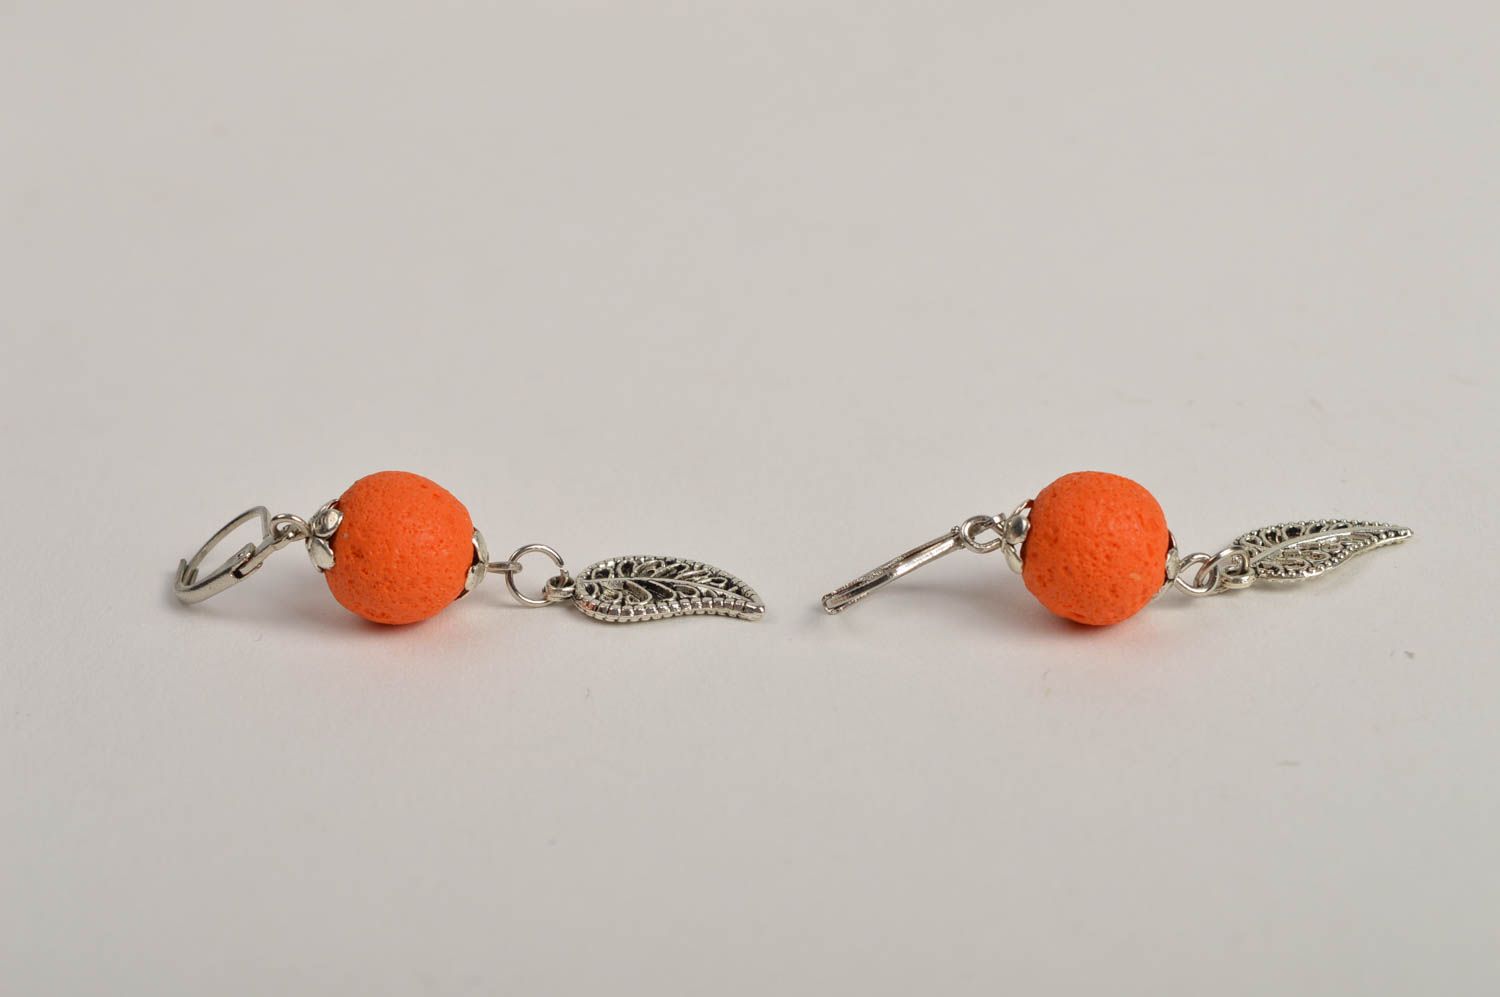 Украшение ручной работы серьги из полимерной глины модные серьги апельсинки фото 3